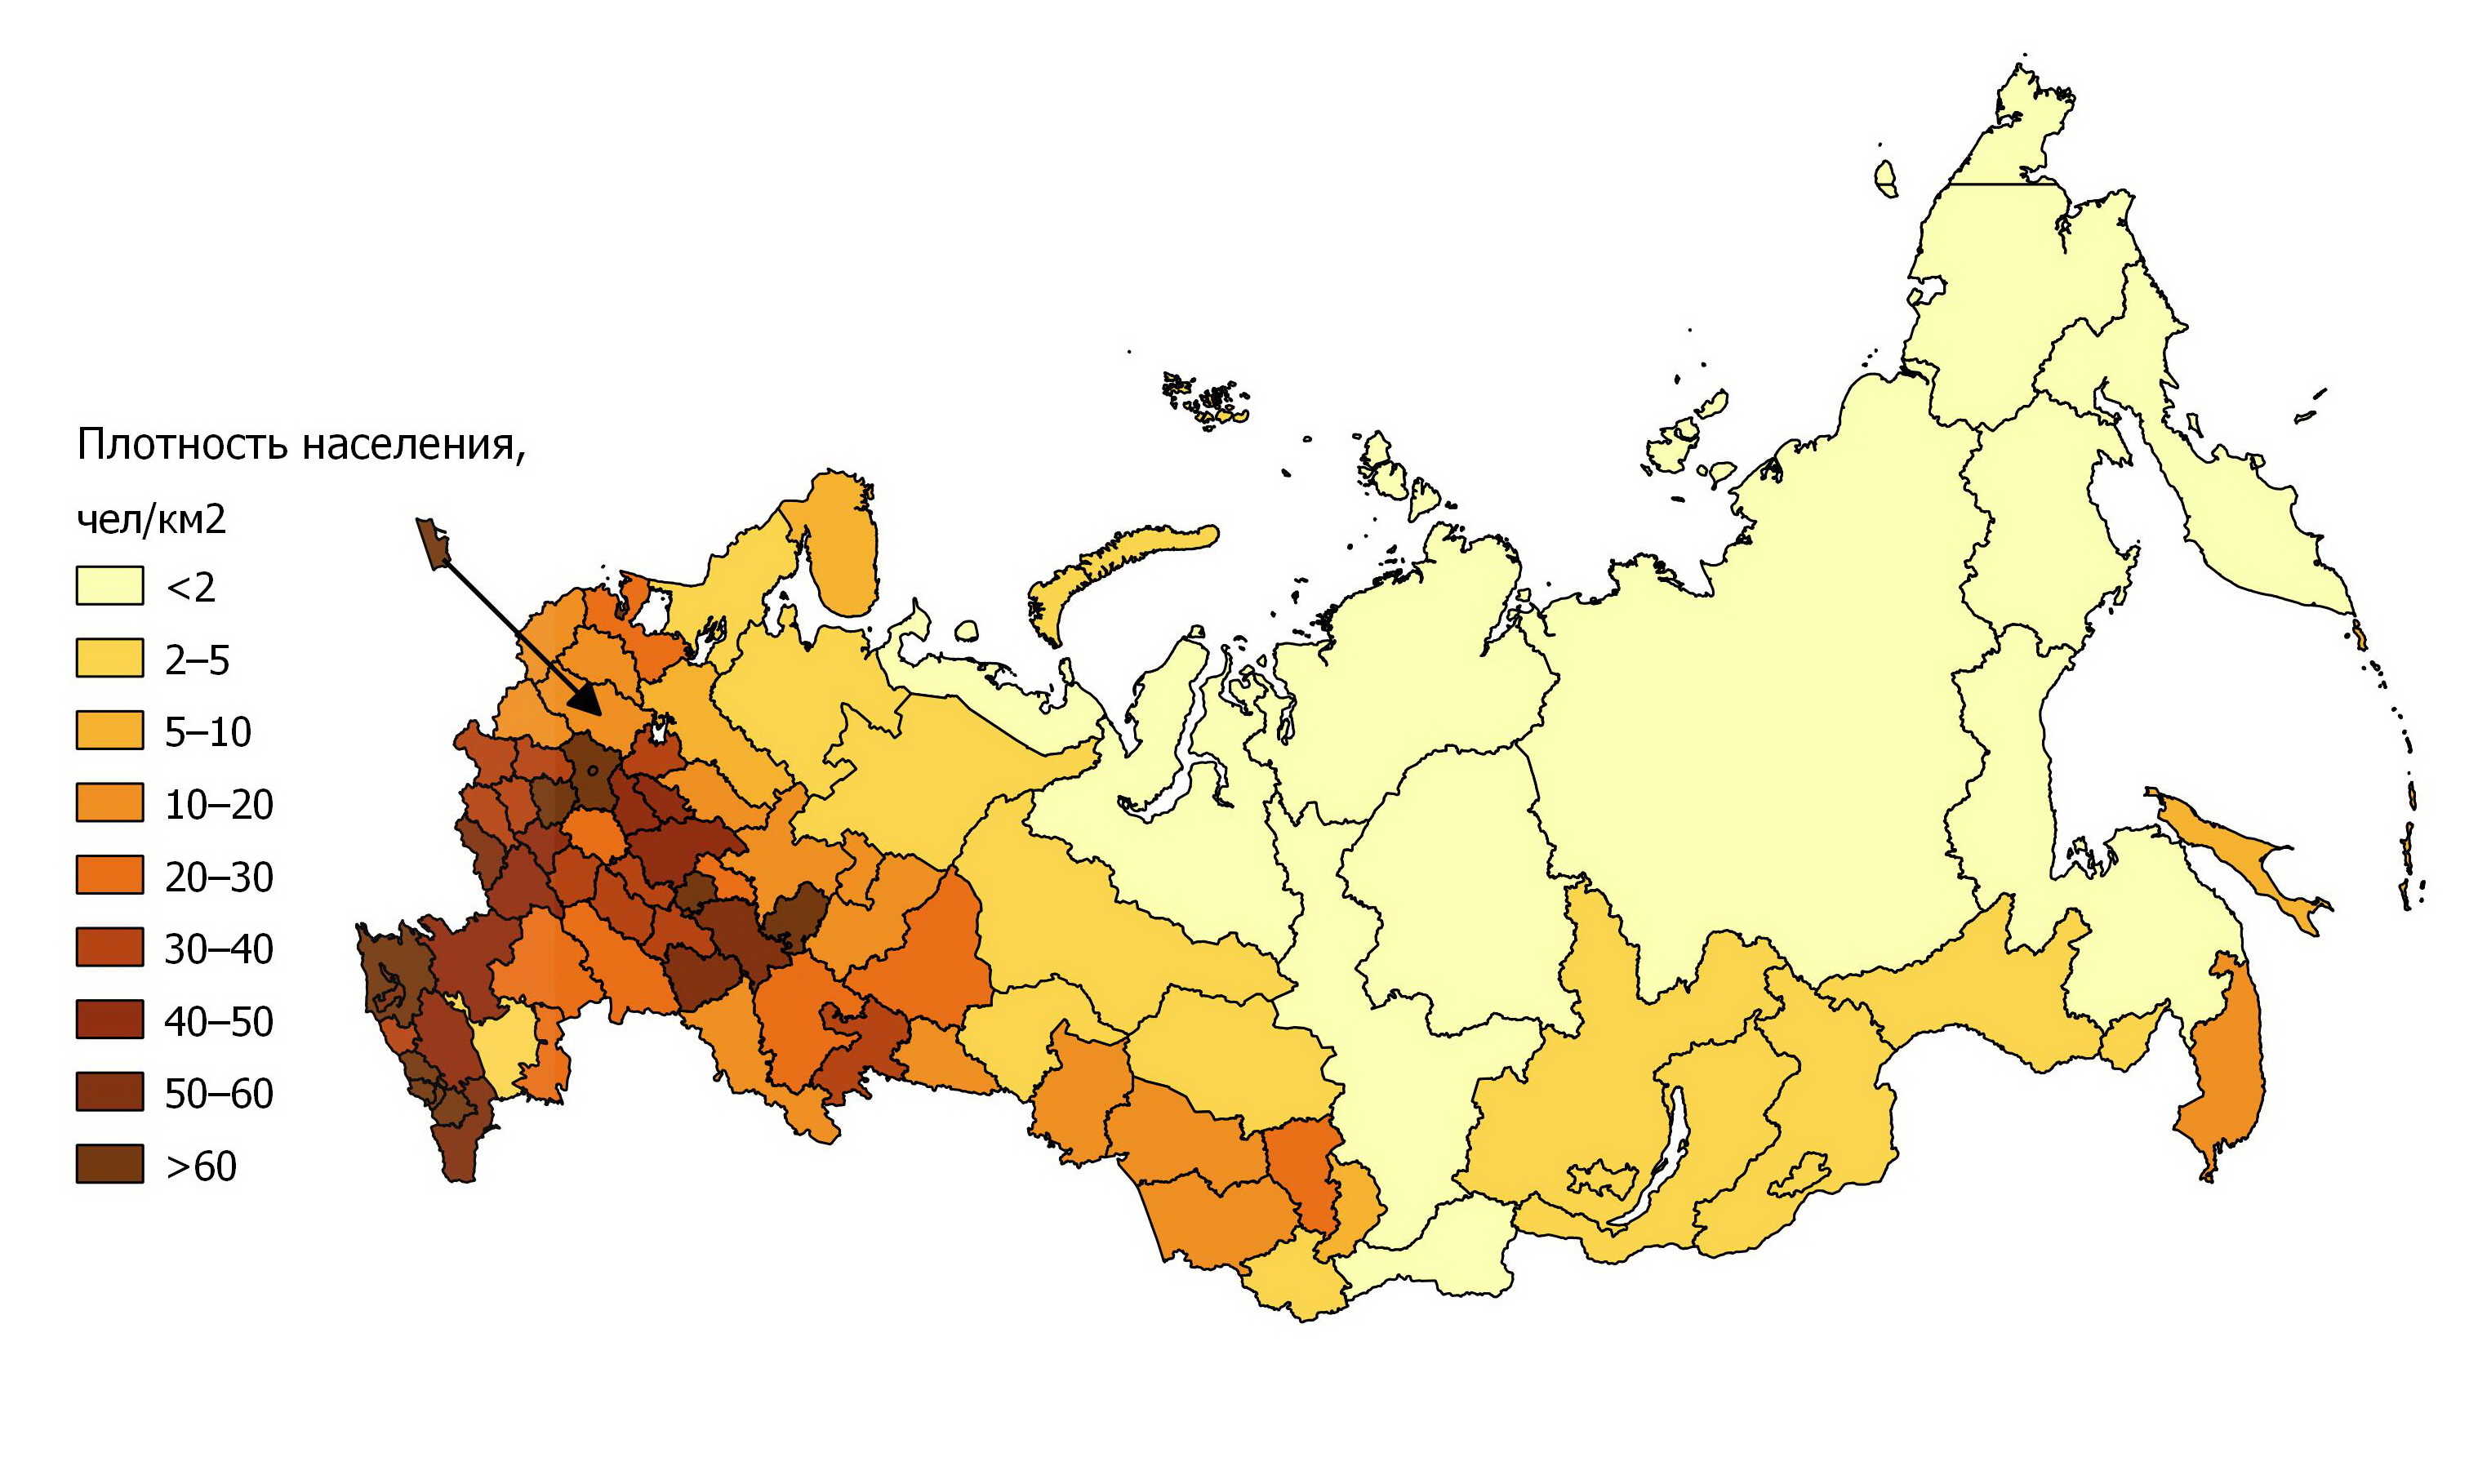 Hat russland wikipedia viele einwohner wie Wie viele